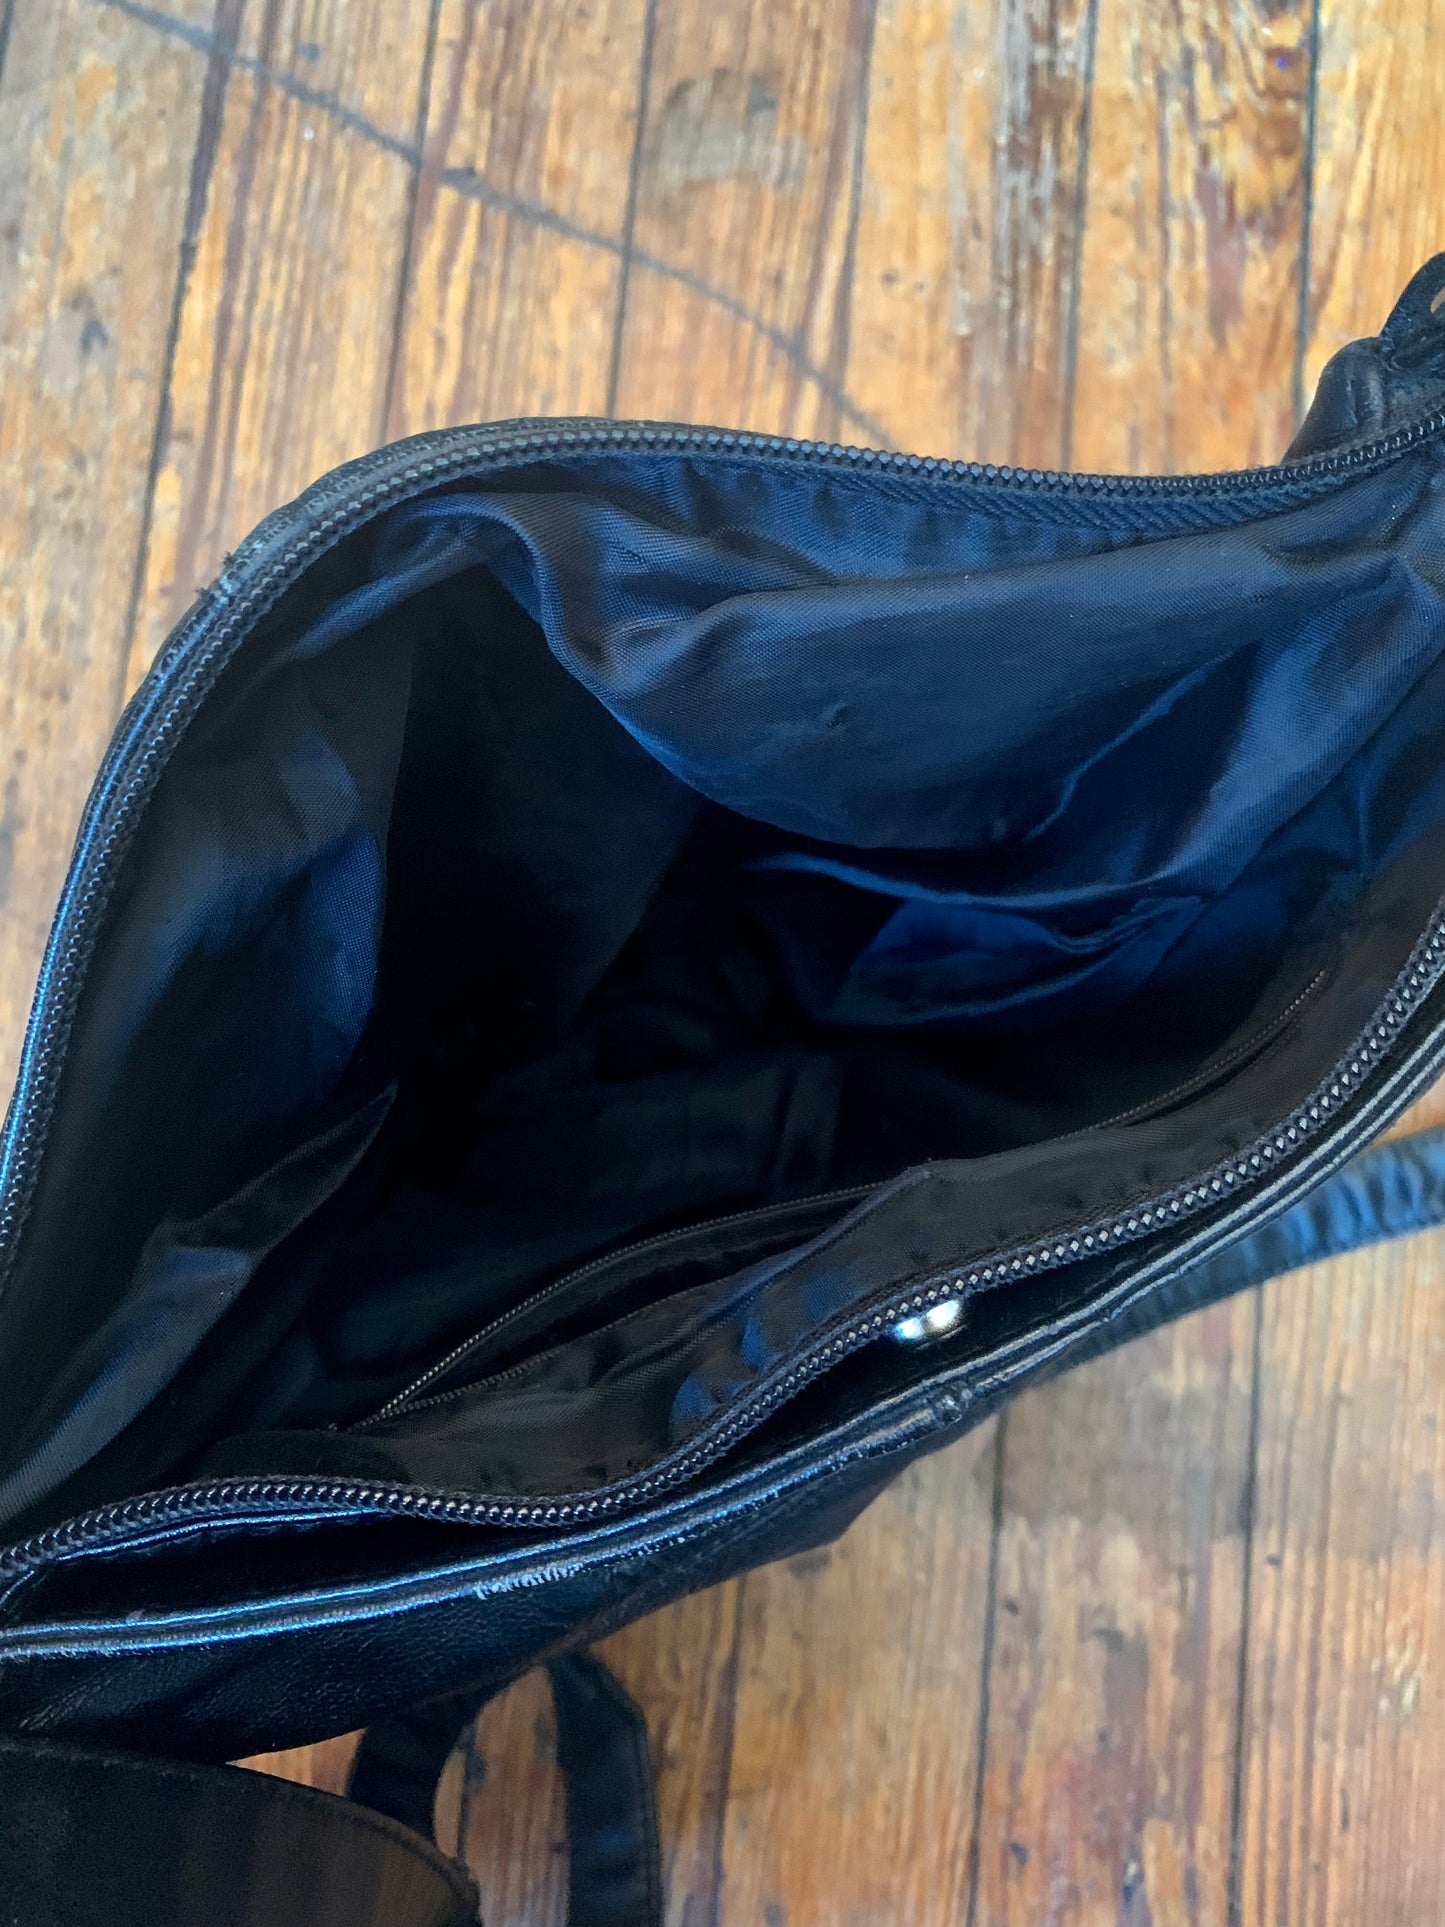 Vintage 90’s Black Leather Shoulder Bag